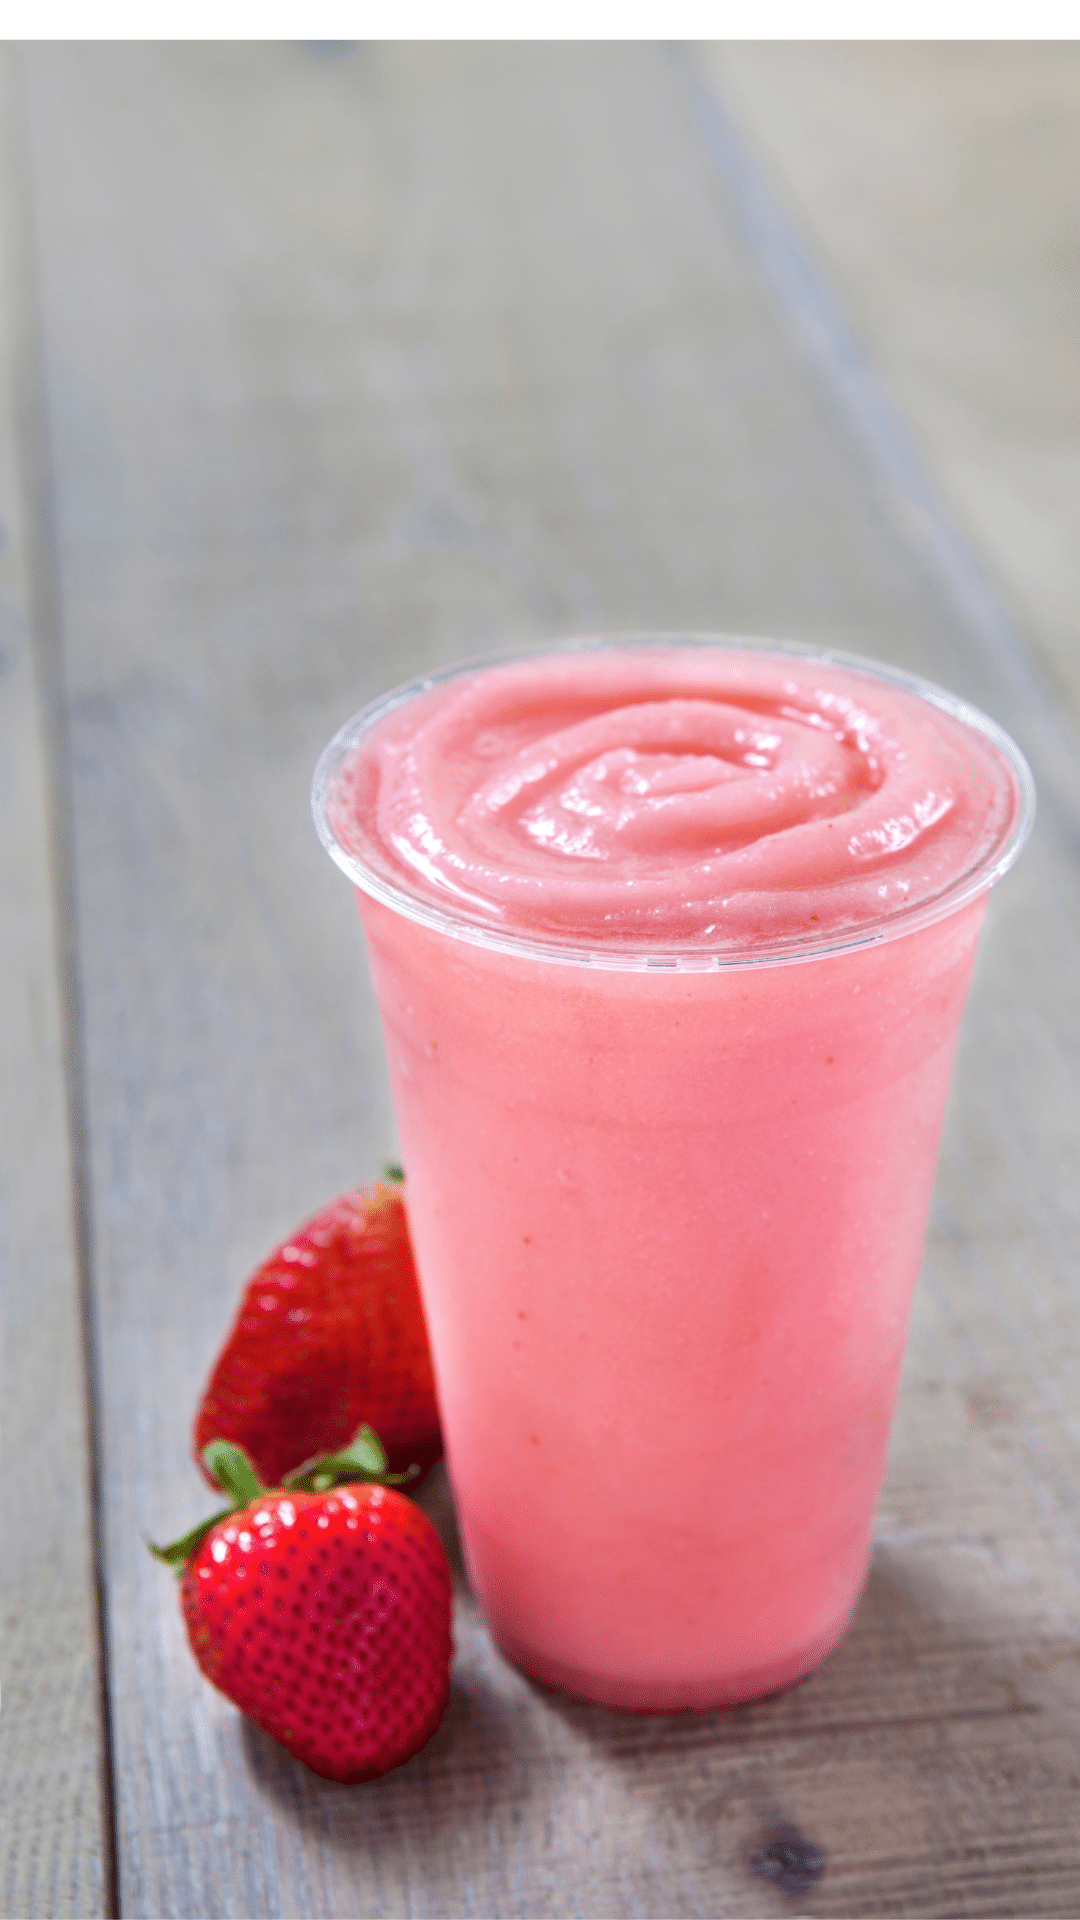 Breakfast – Strawberry Smoothie